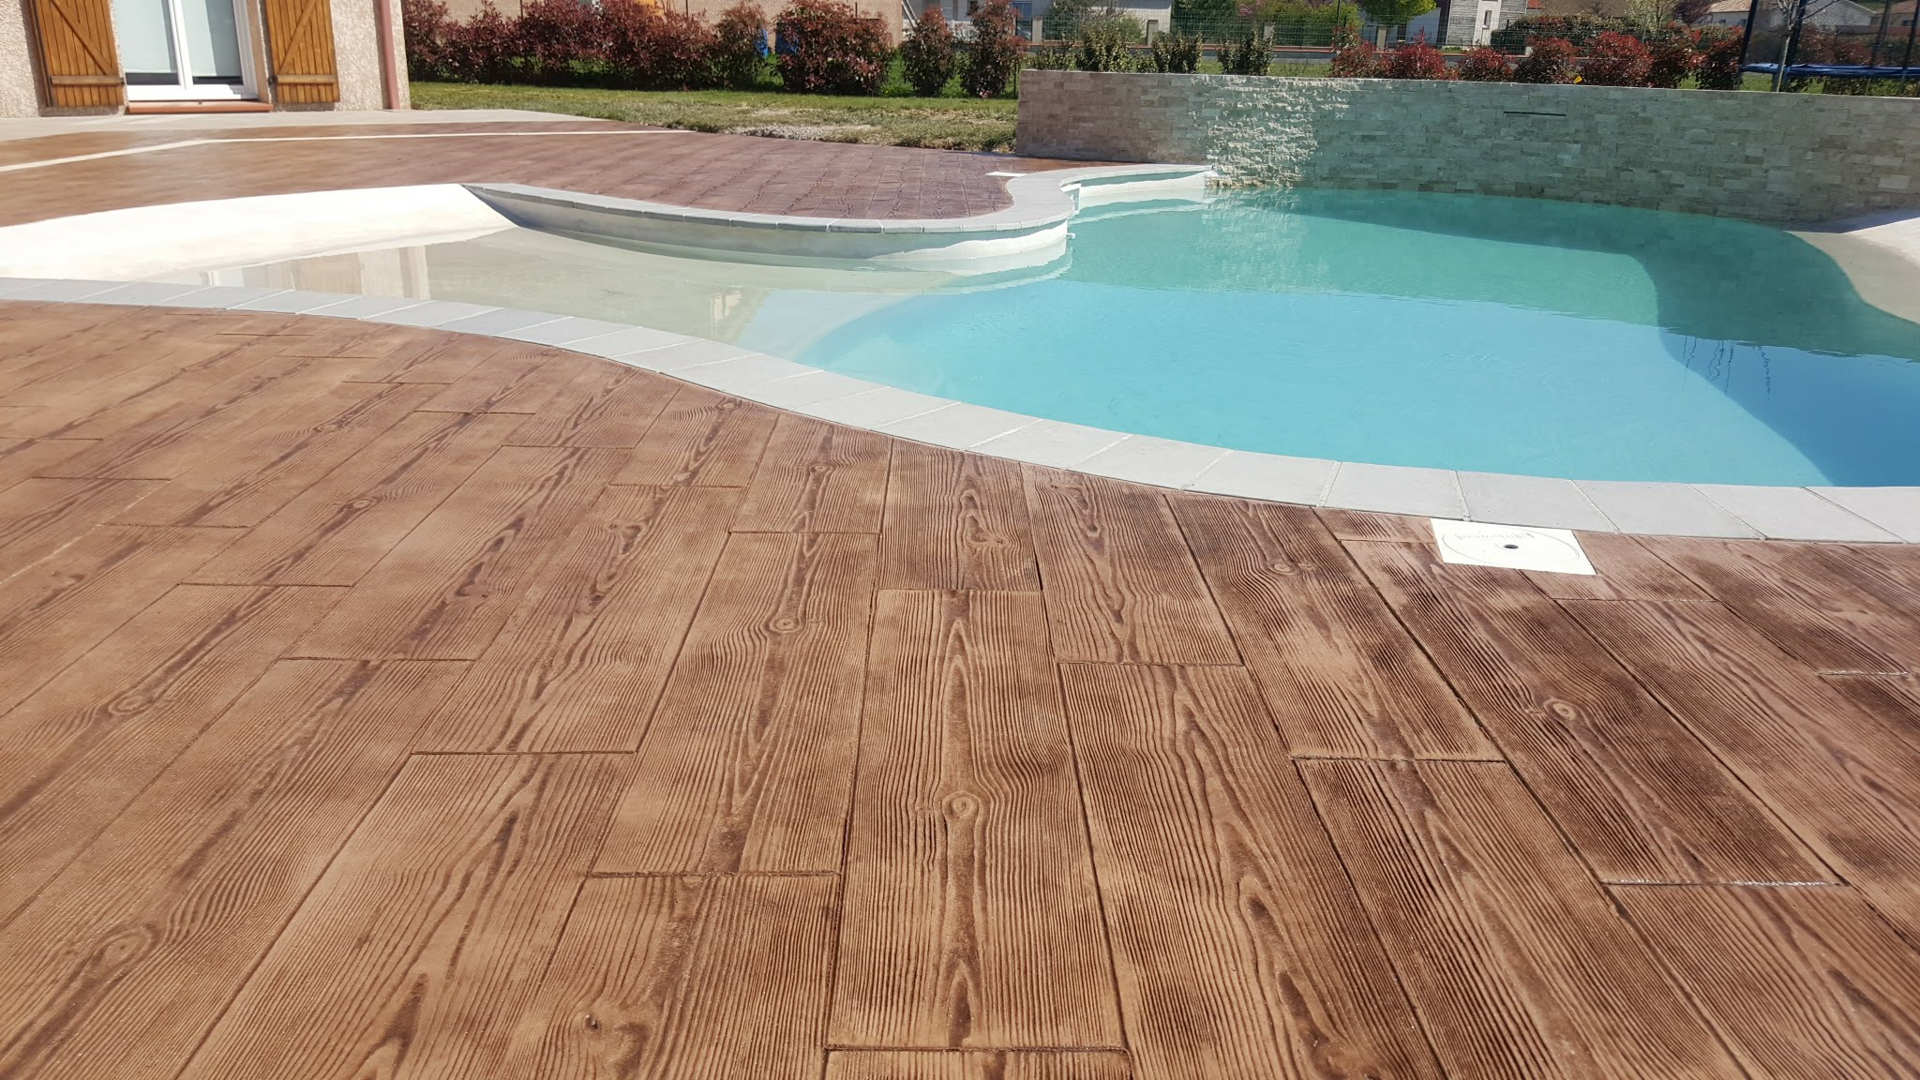 Calcestruzzo stampato imitazione legno sul pavimento intorno alla piscina